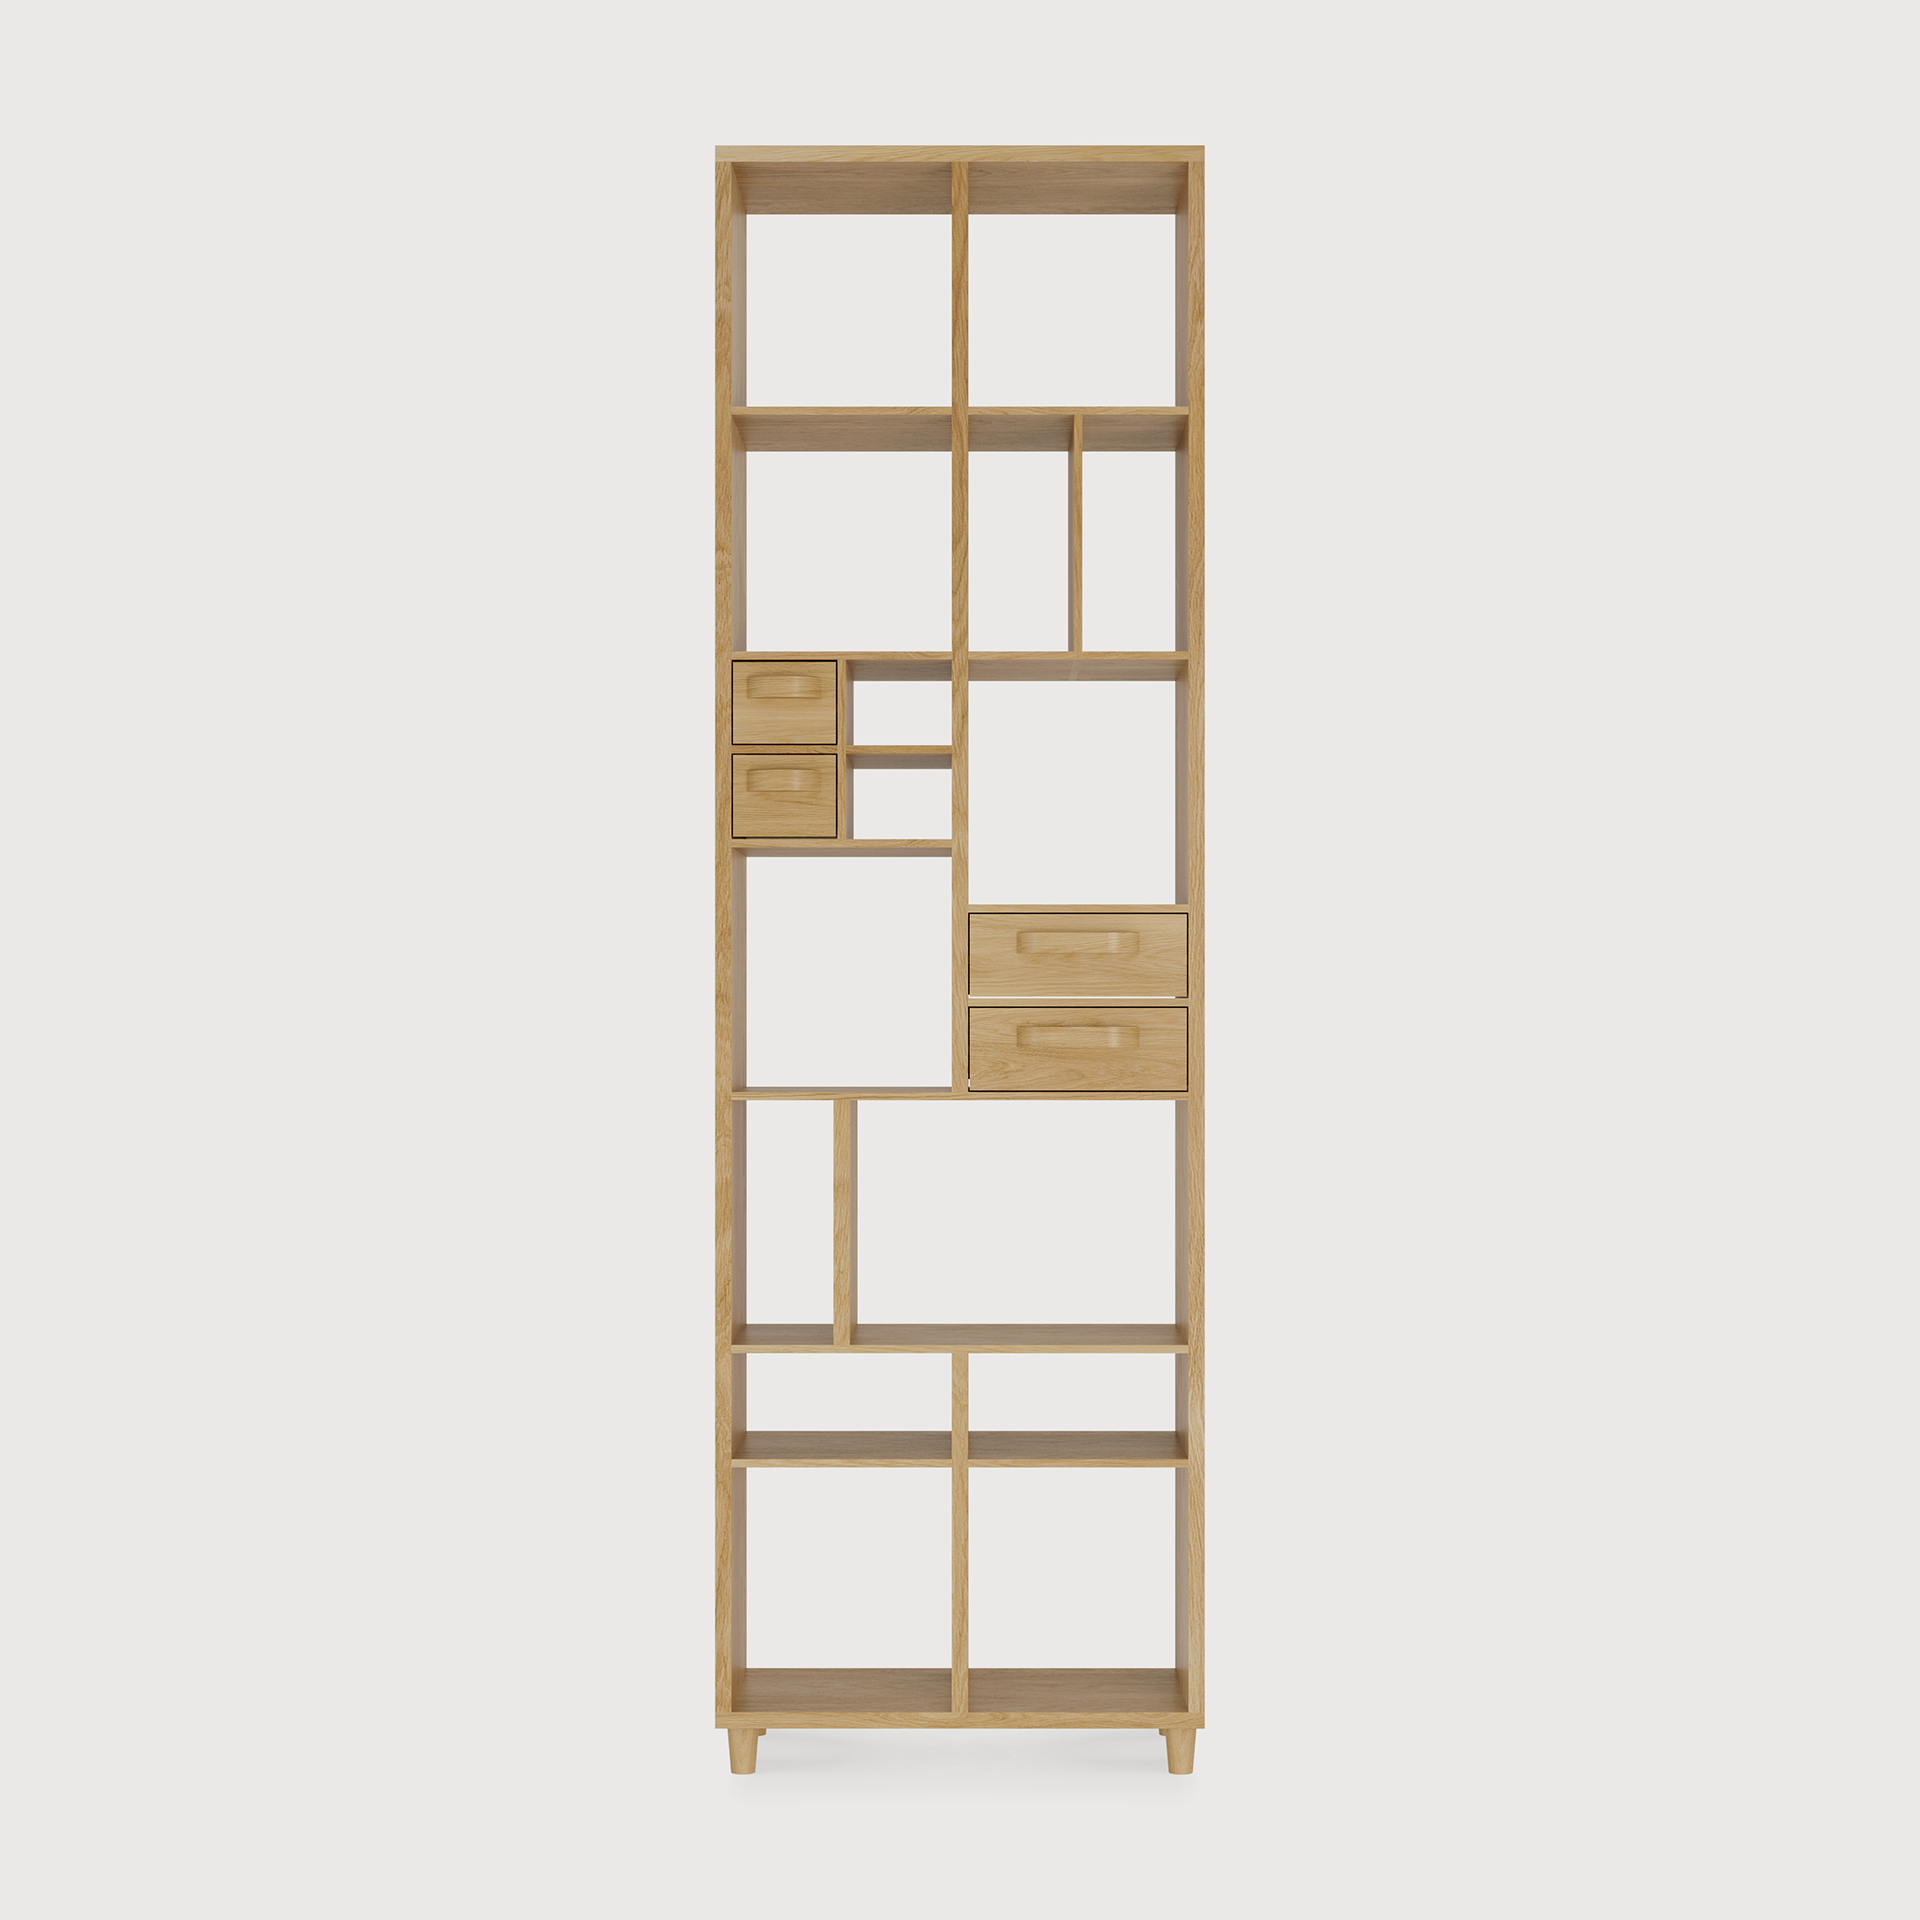 [45016] Pirouette book rack - 4 drawers 